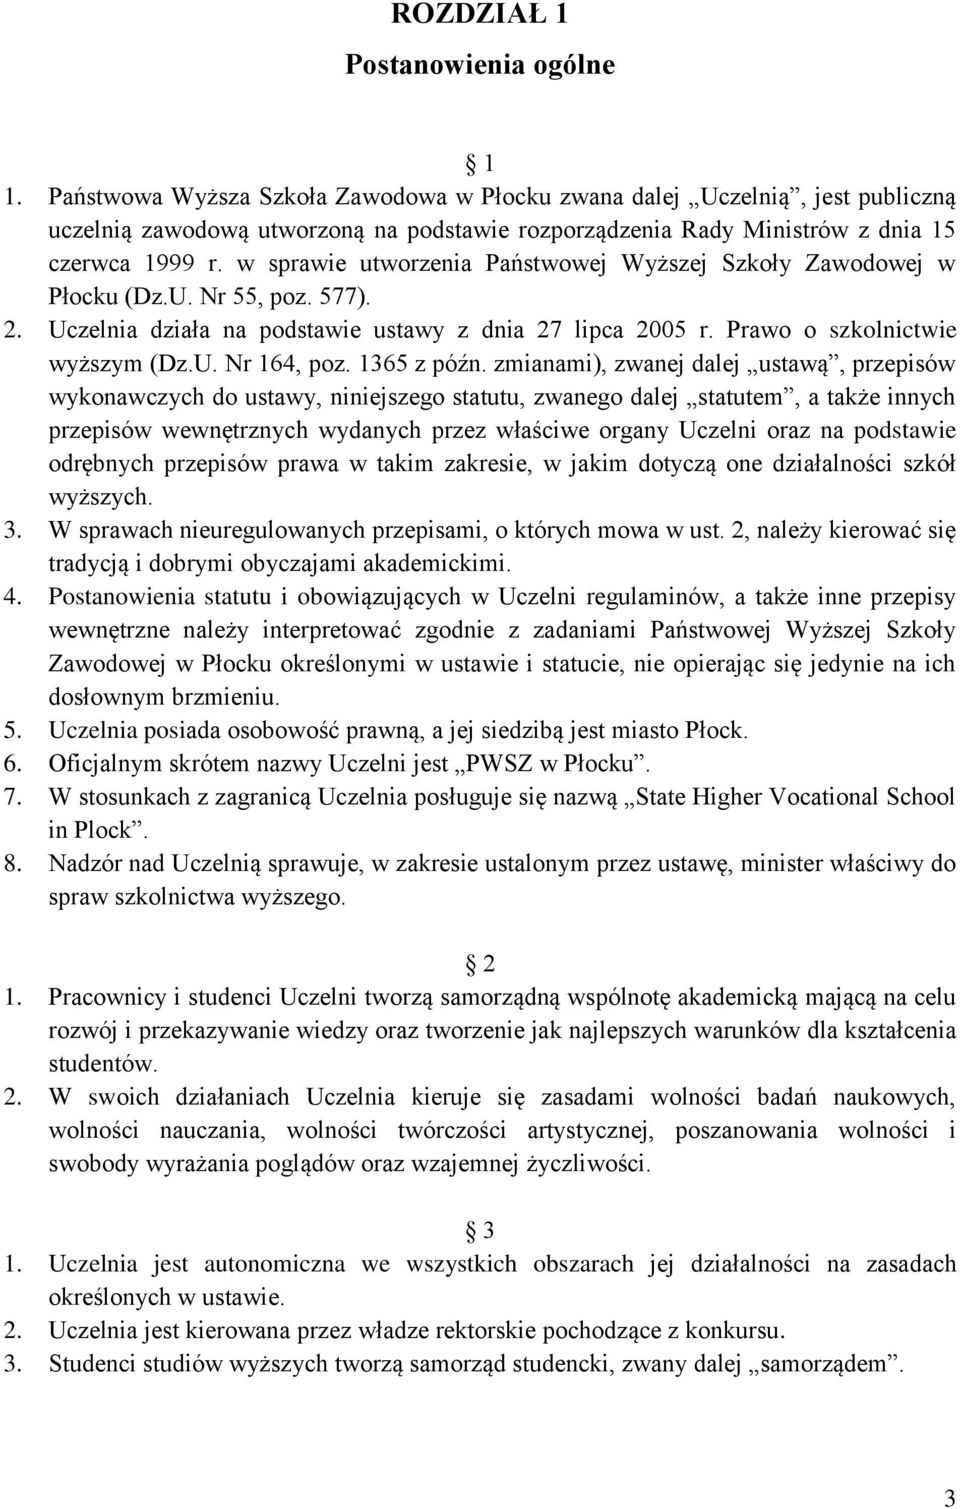 w sprawie utworzenia Państwowej Wyższej Szkoły Zawodowej w Płocku (Dz.U. Nr 55, poz. 577). 2. Uczelnia działa na podstawie ustawy z dnia 27 lipca 2005 r. Prawo o szkolnictwie wyższym (Dz.U. Nr 164, poz.